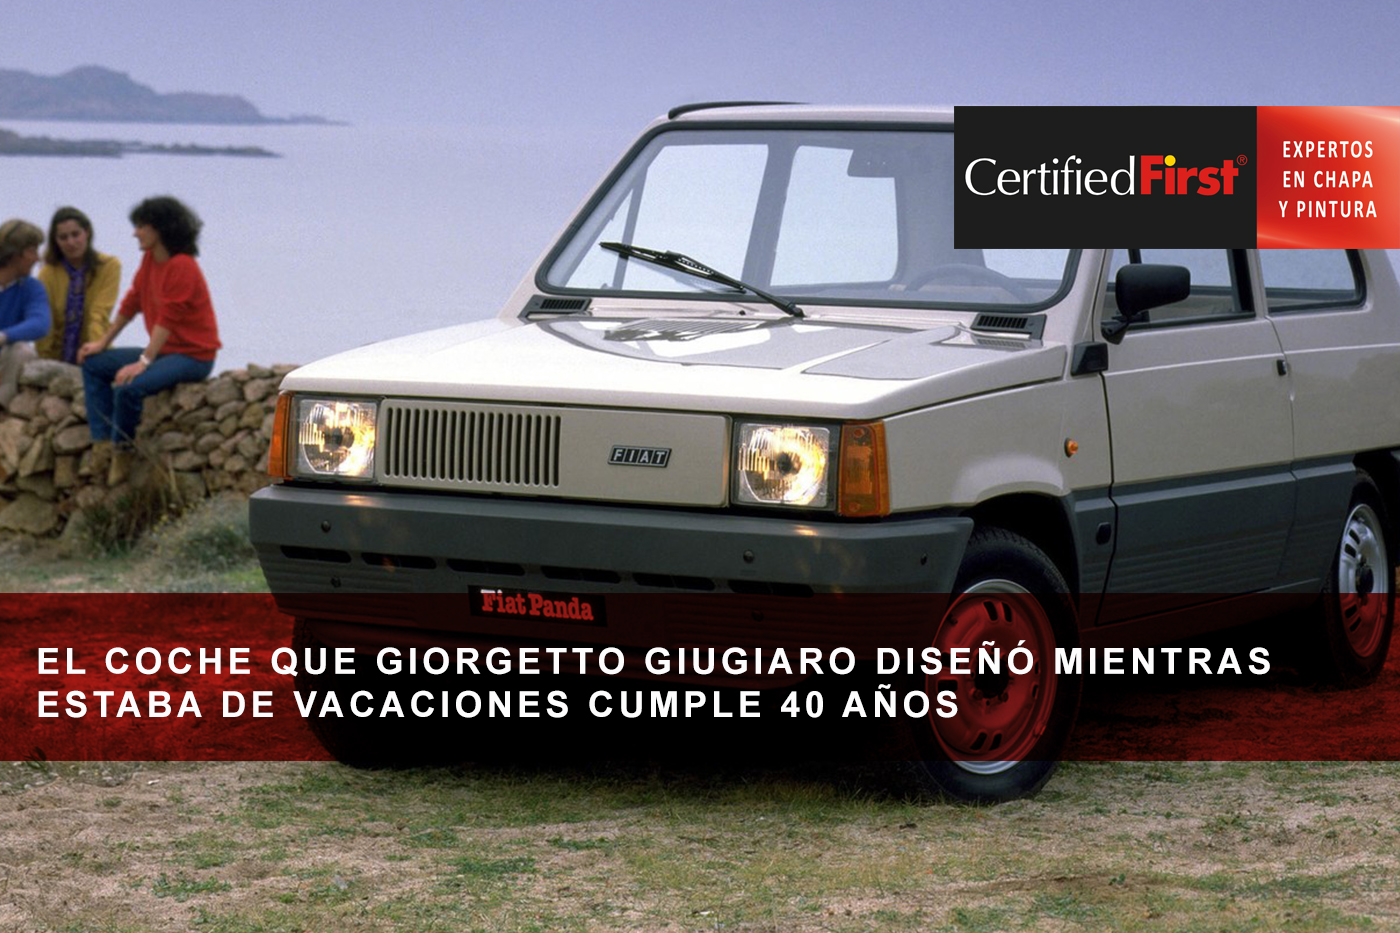 El coche que Giorgetto Giugiaro diseñó mientras estaba de vacaciones cumple 40 años